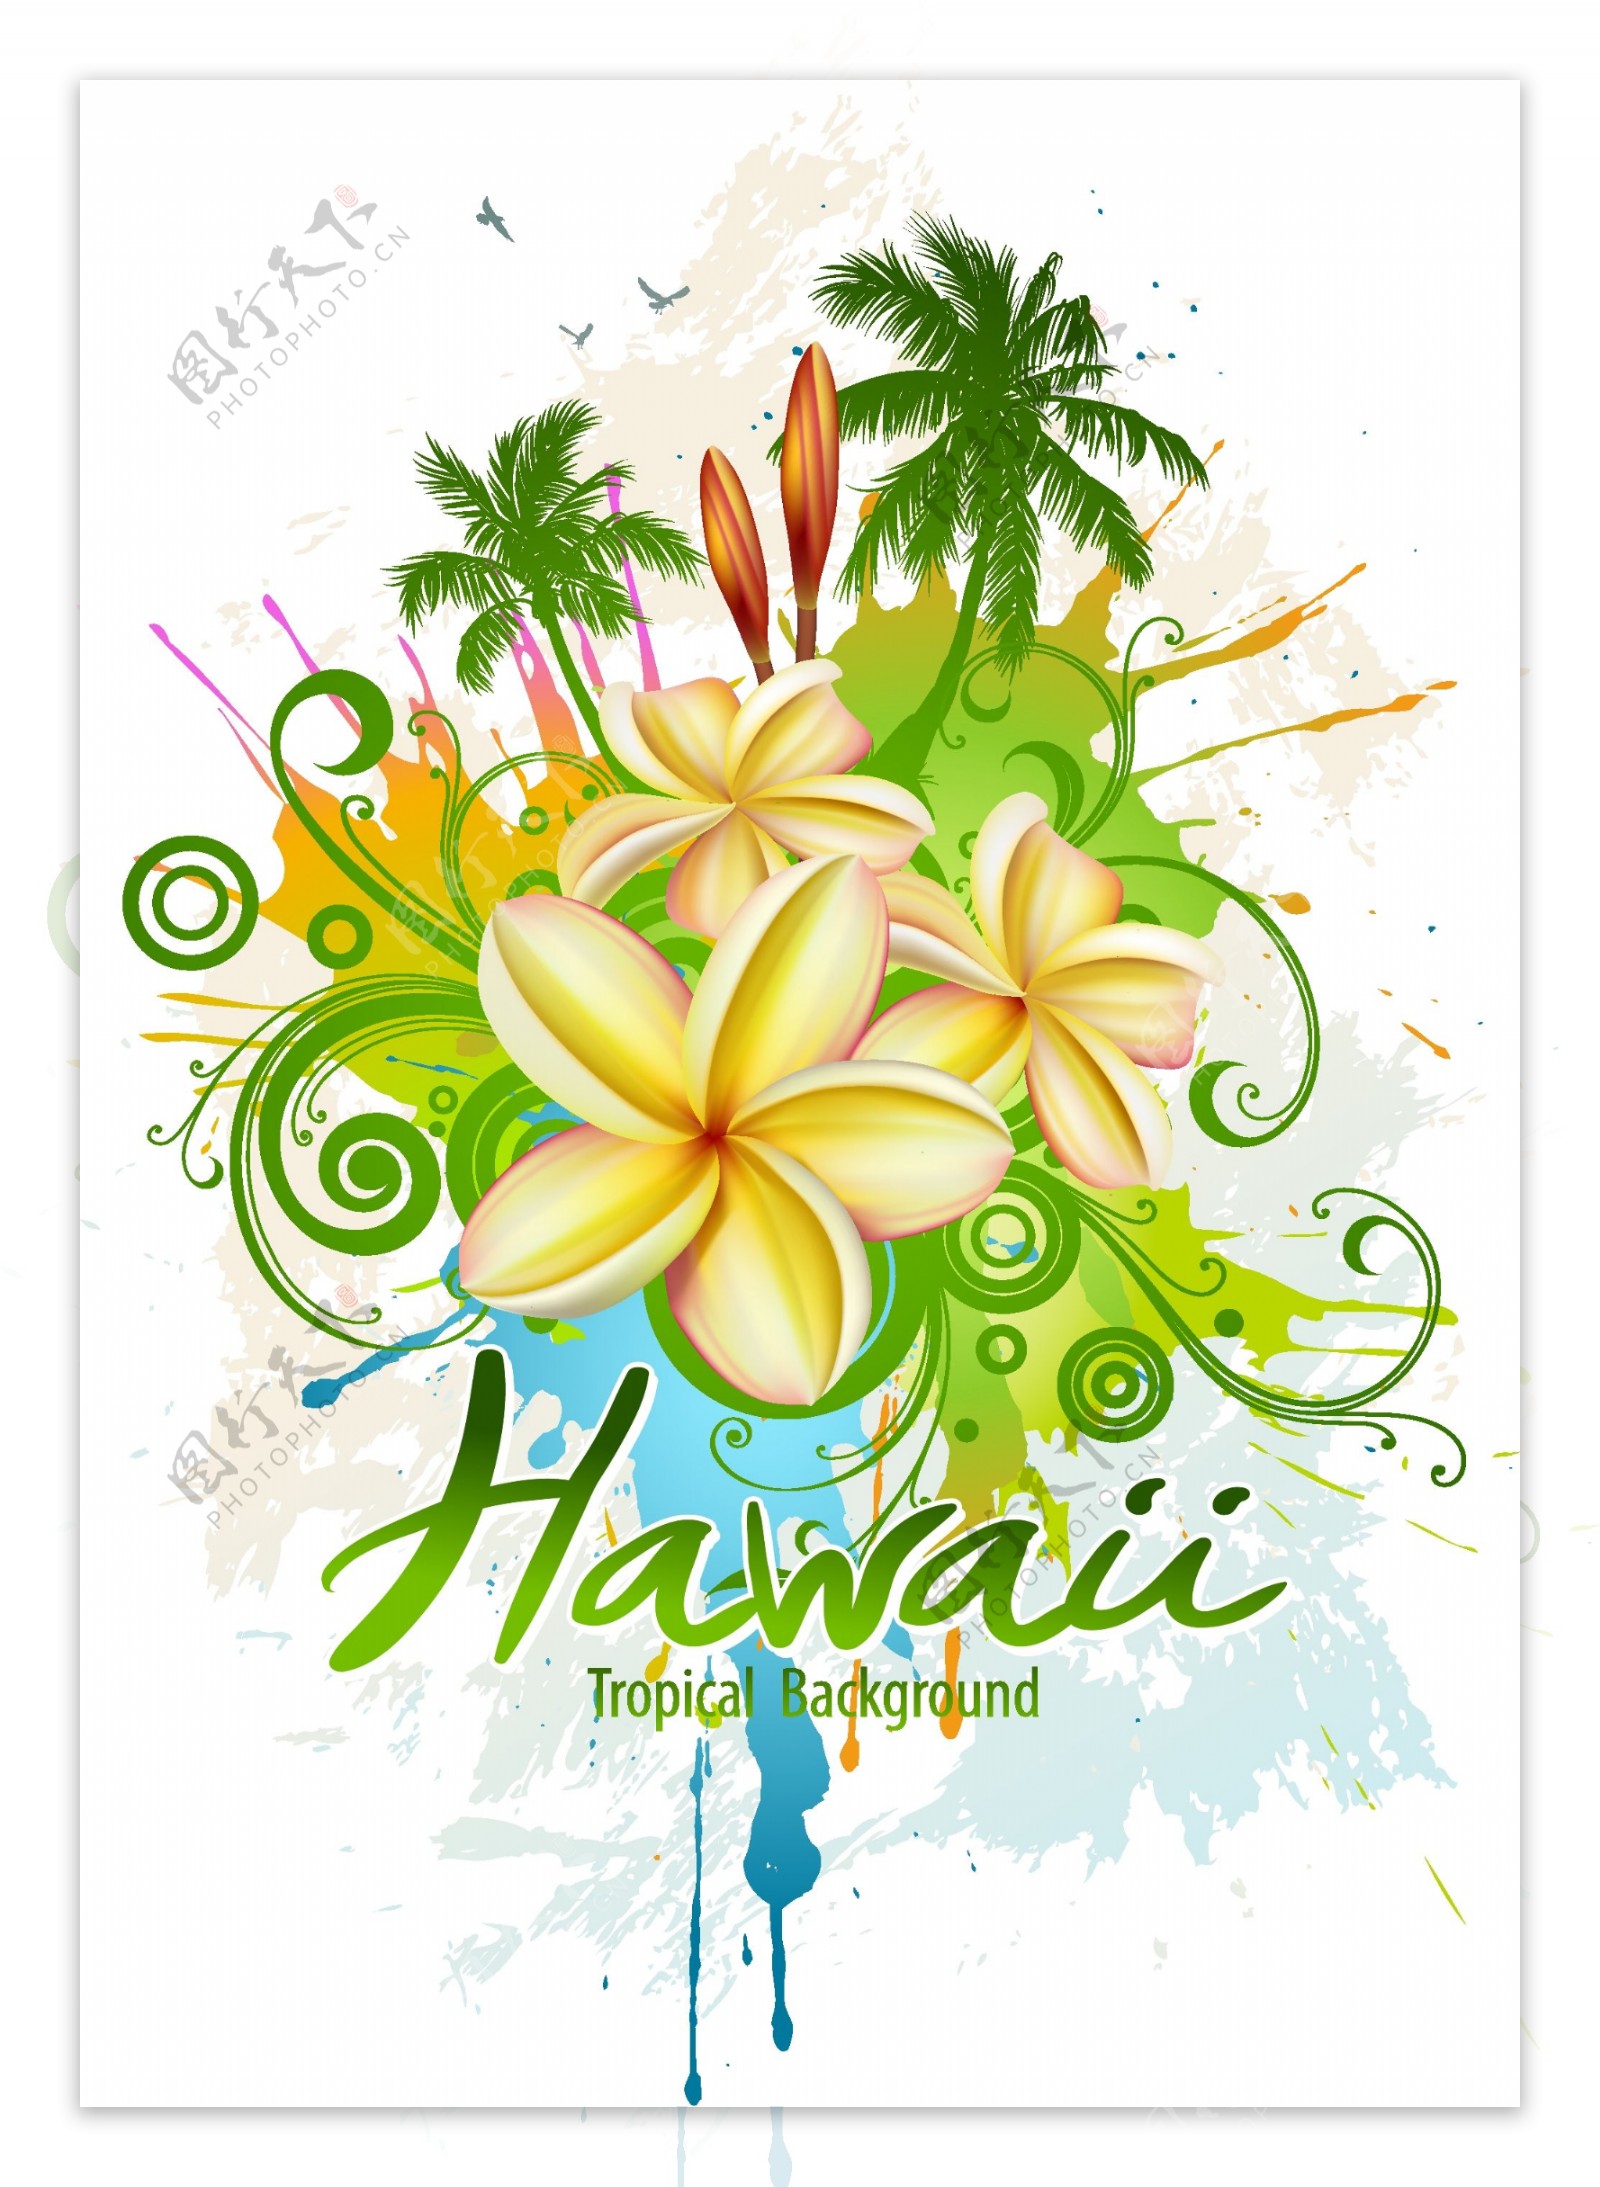 热带天堂夏威夷宣传海报矢量素材